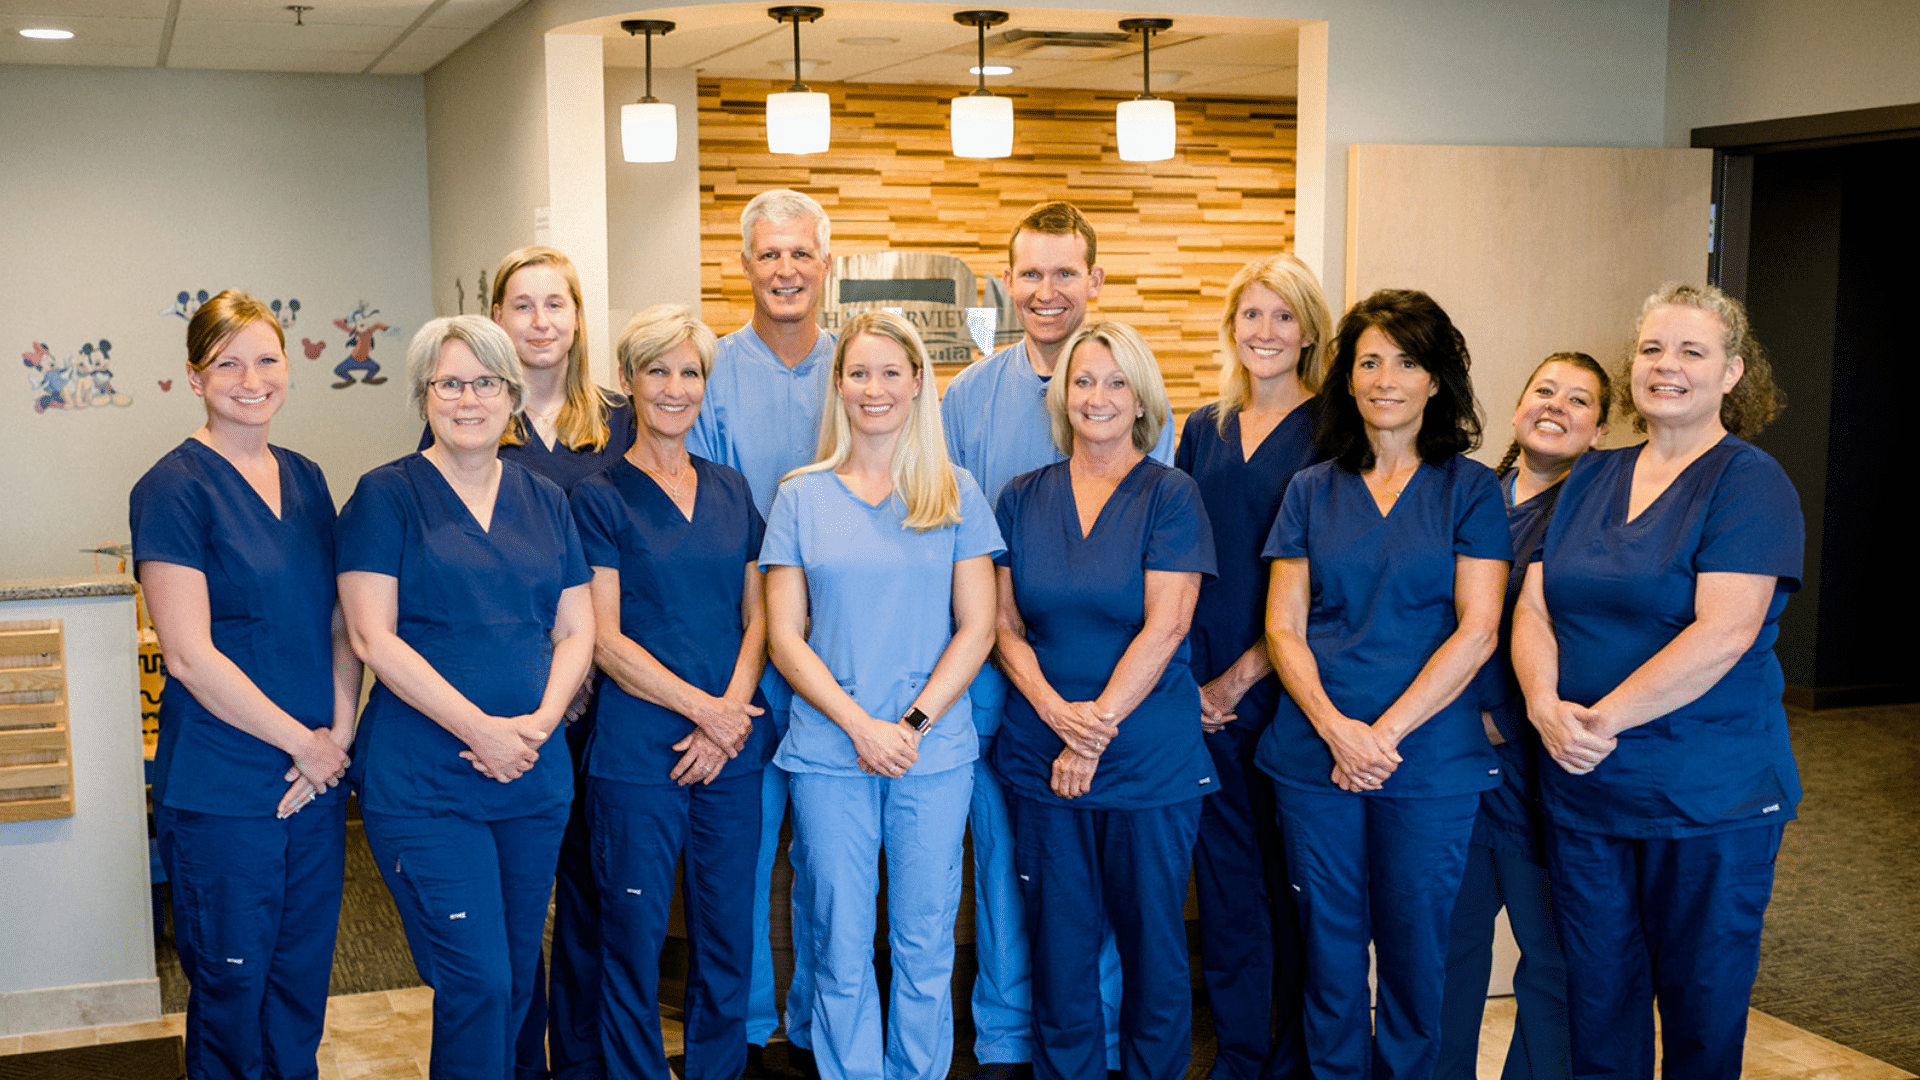 Meet our dentist duluth mn team